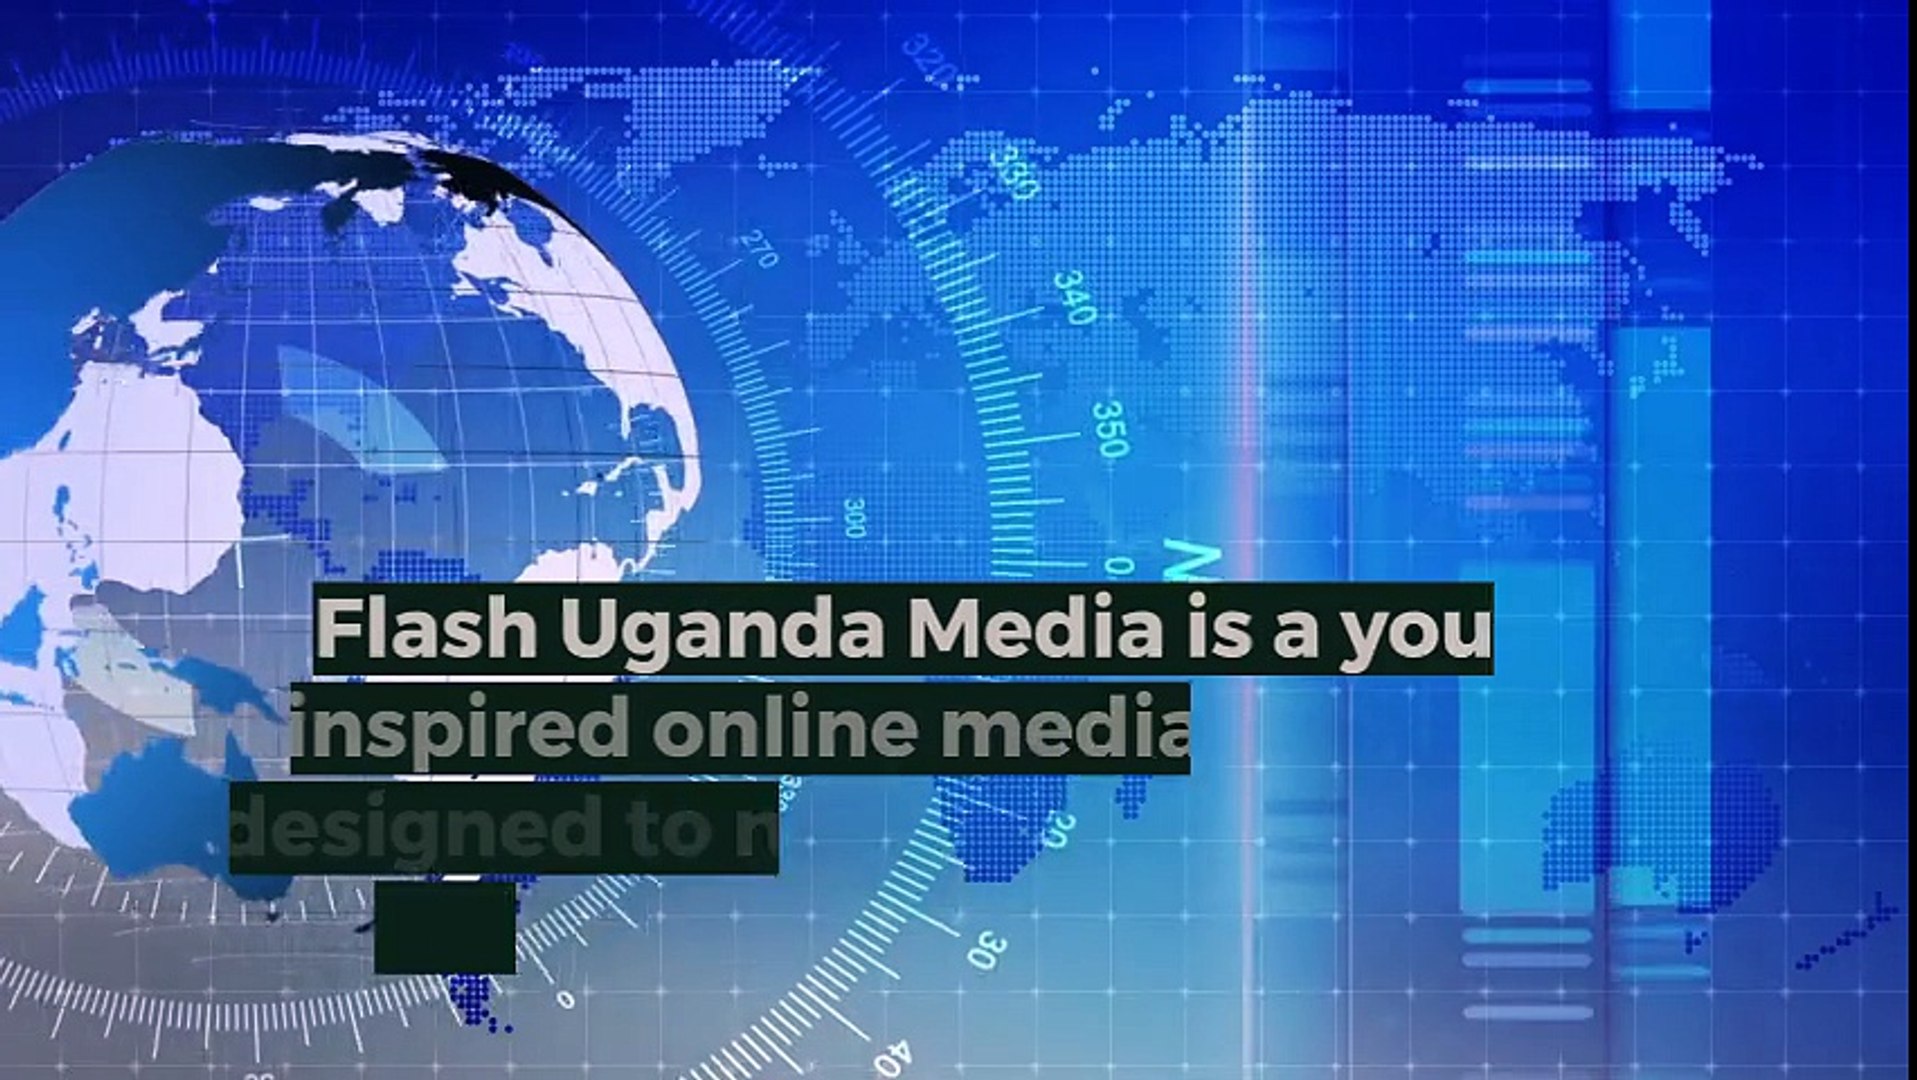 Latest News in Uganda